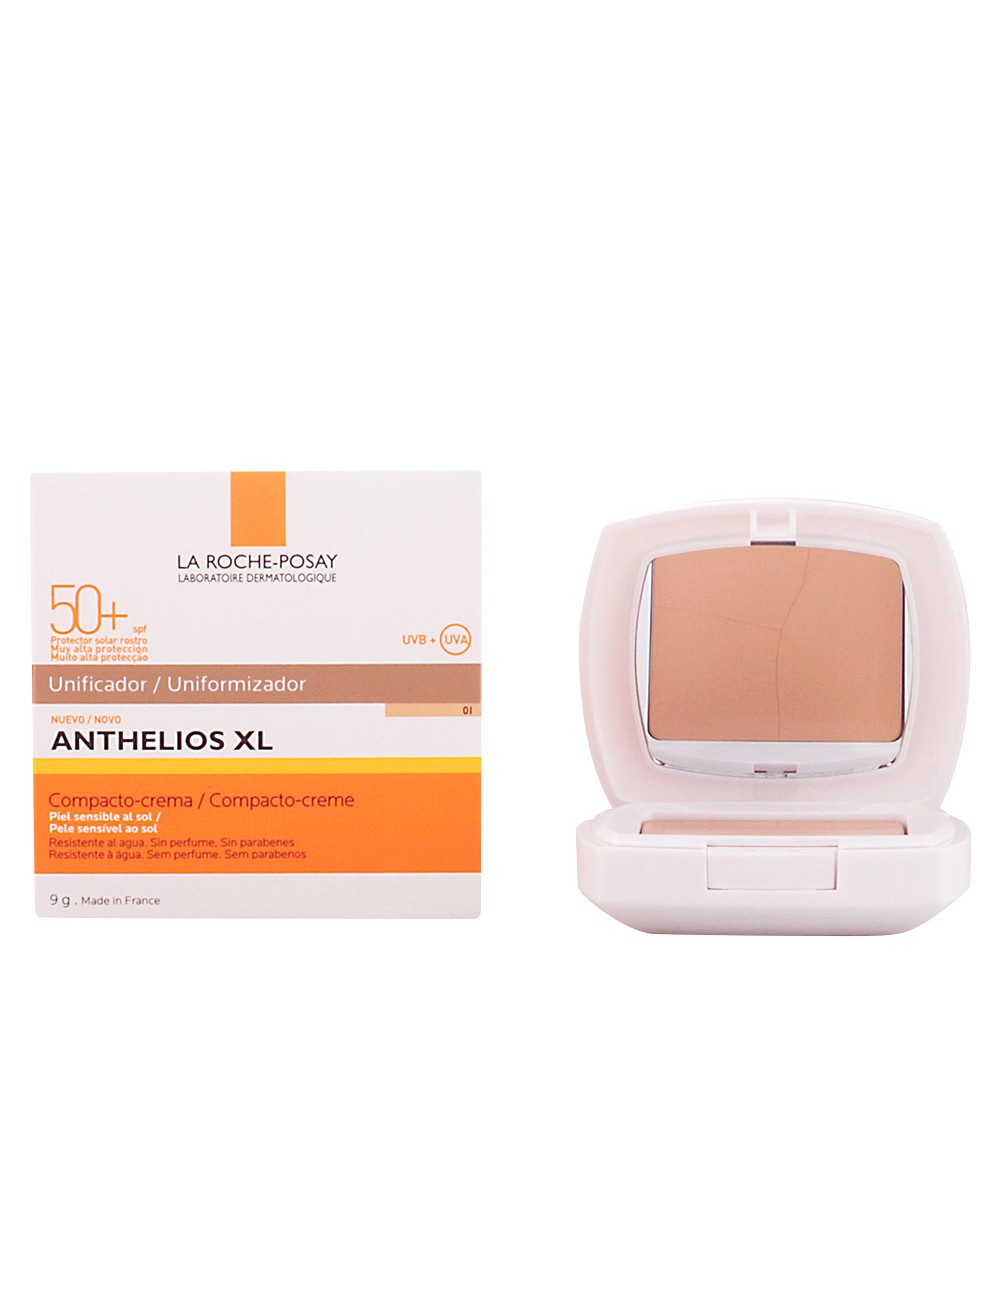 ANTHELIOS XL compact-crème unifiant SPF50+ 9 gr